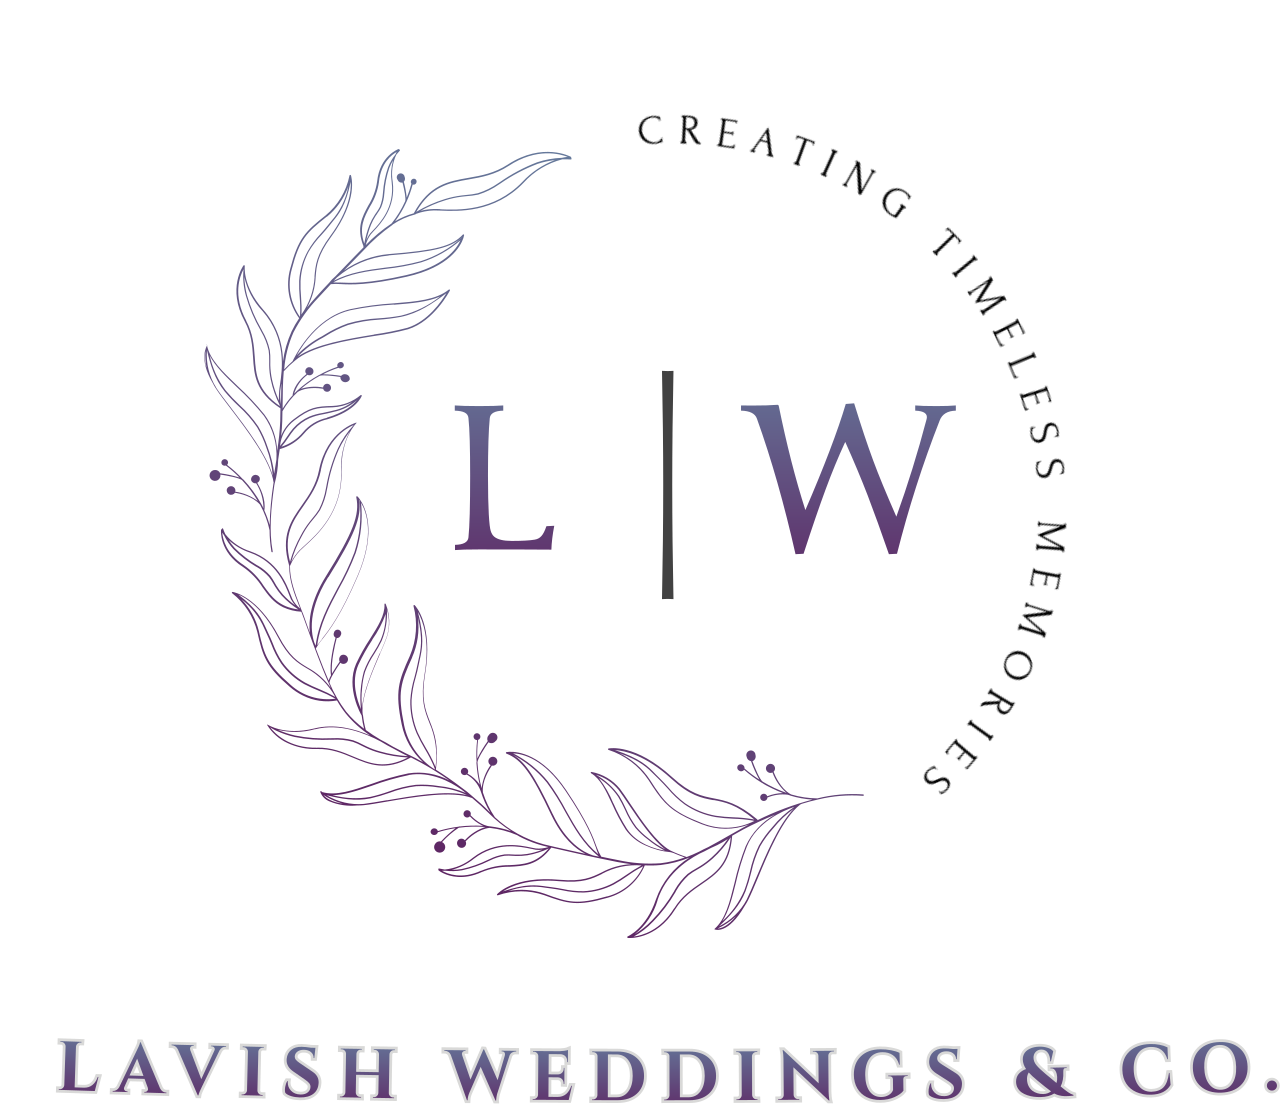 L W's logo